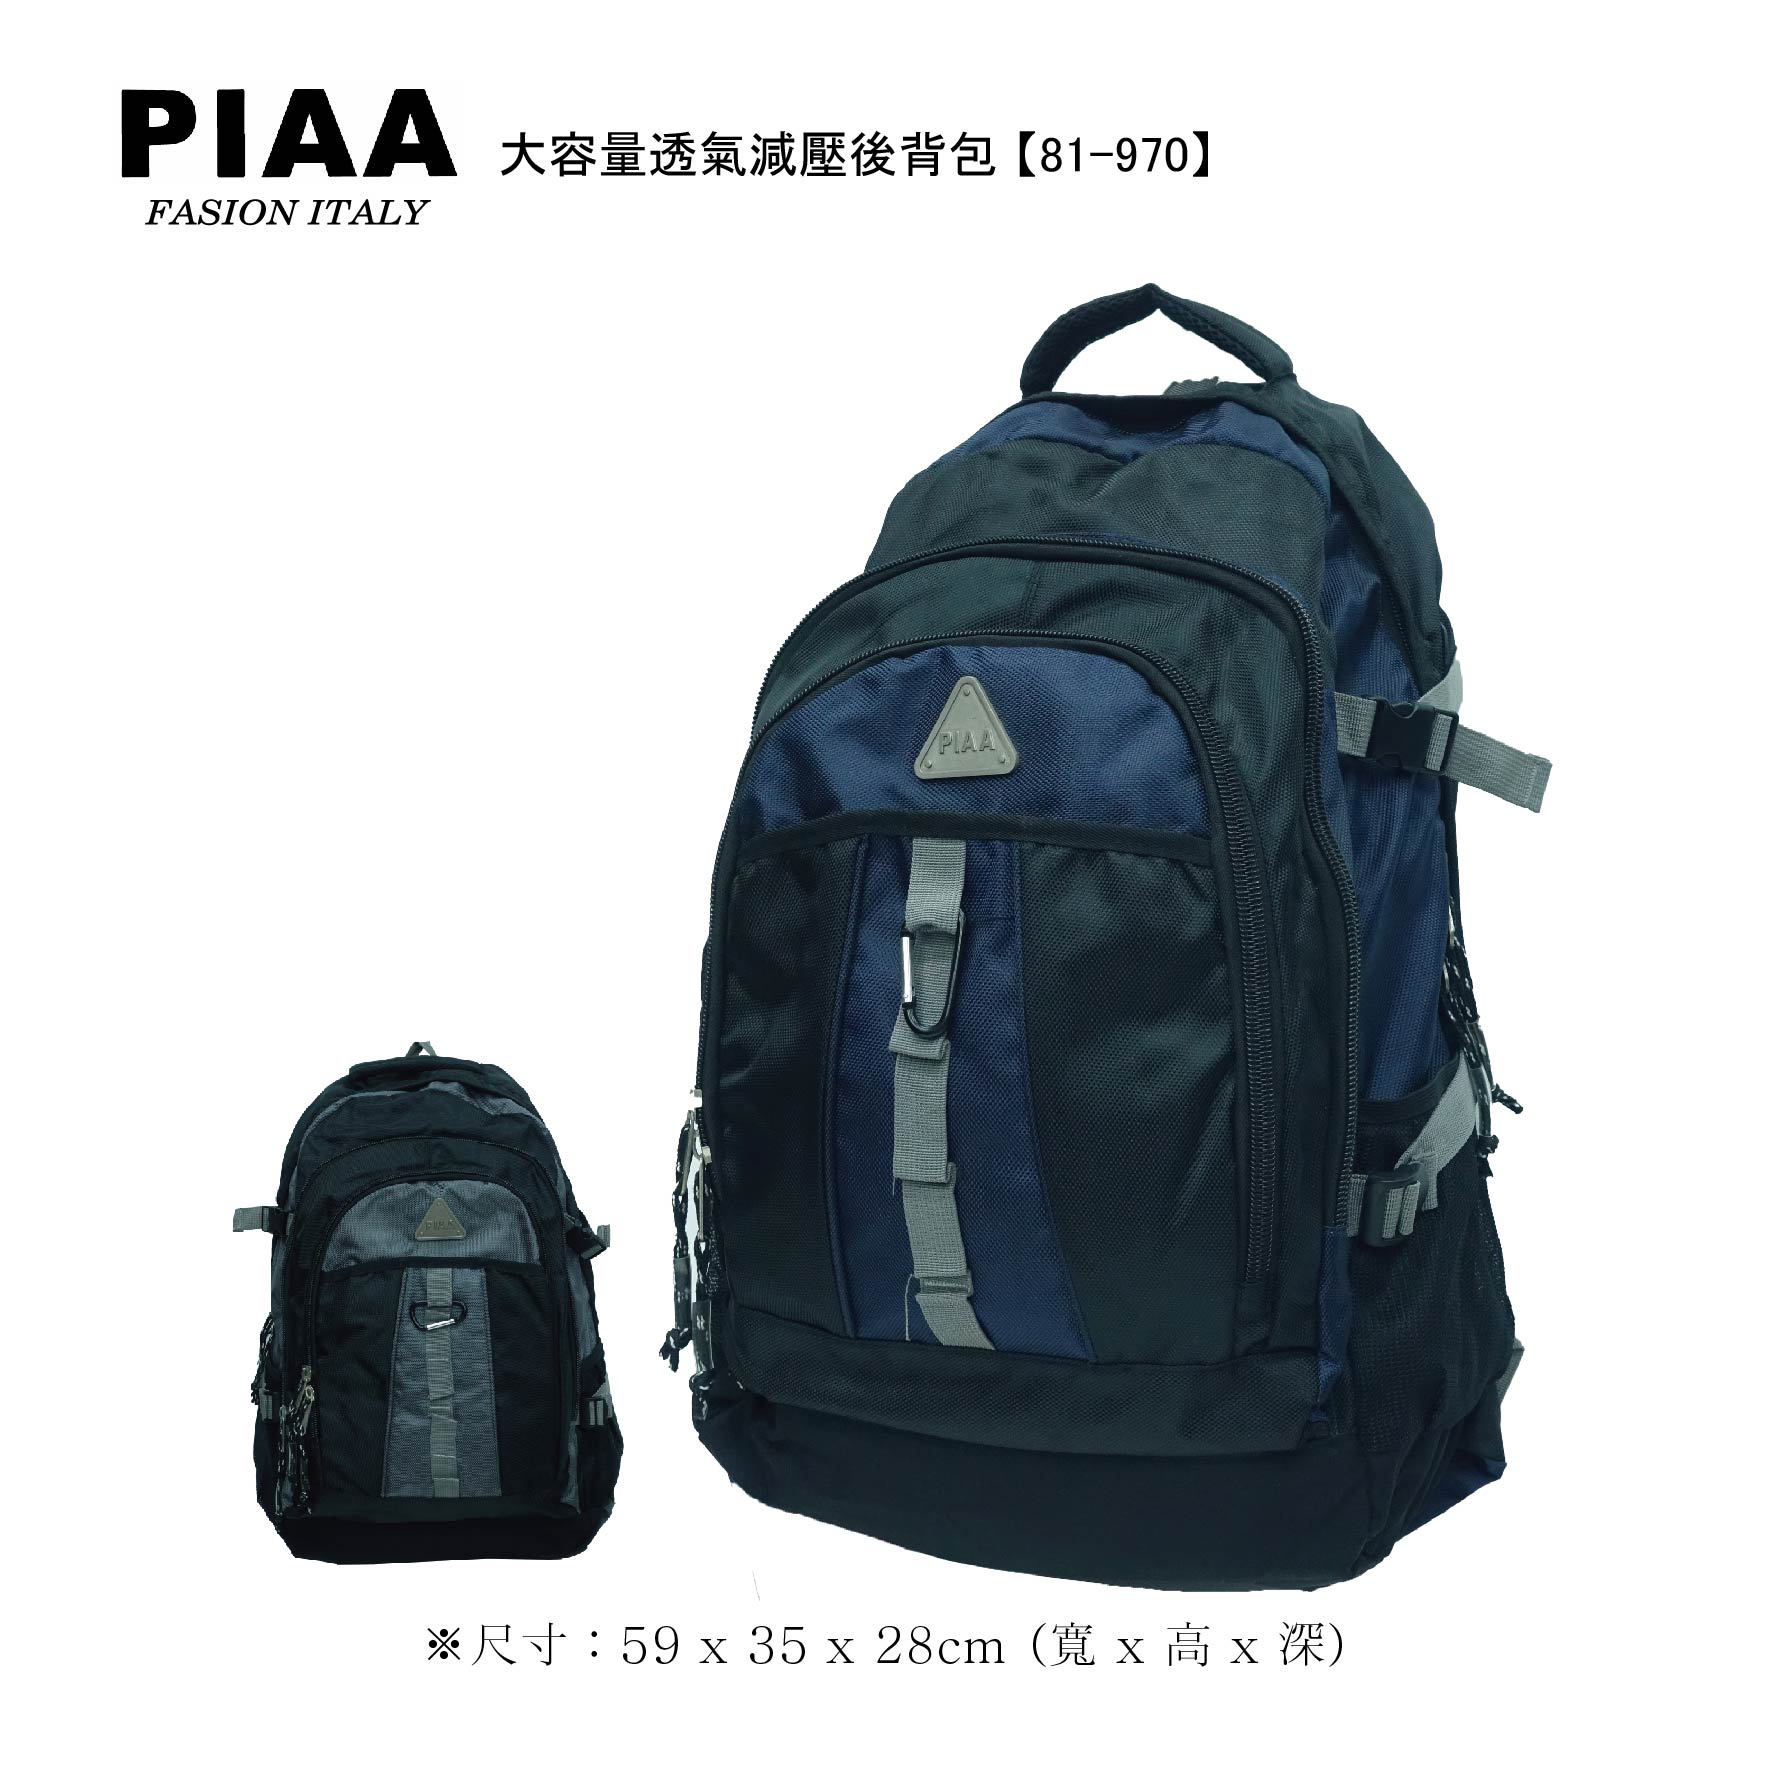 81-970【PIAA 皮亞】大容量透氣減壓實用休閒款電腦背包 (二色)